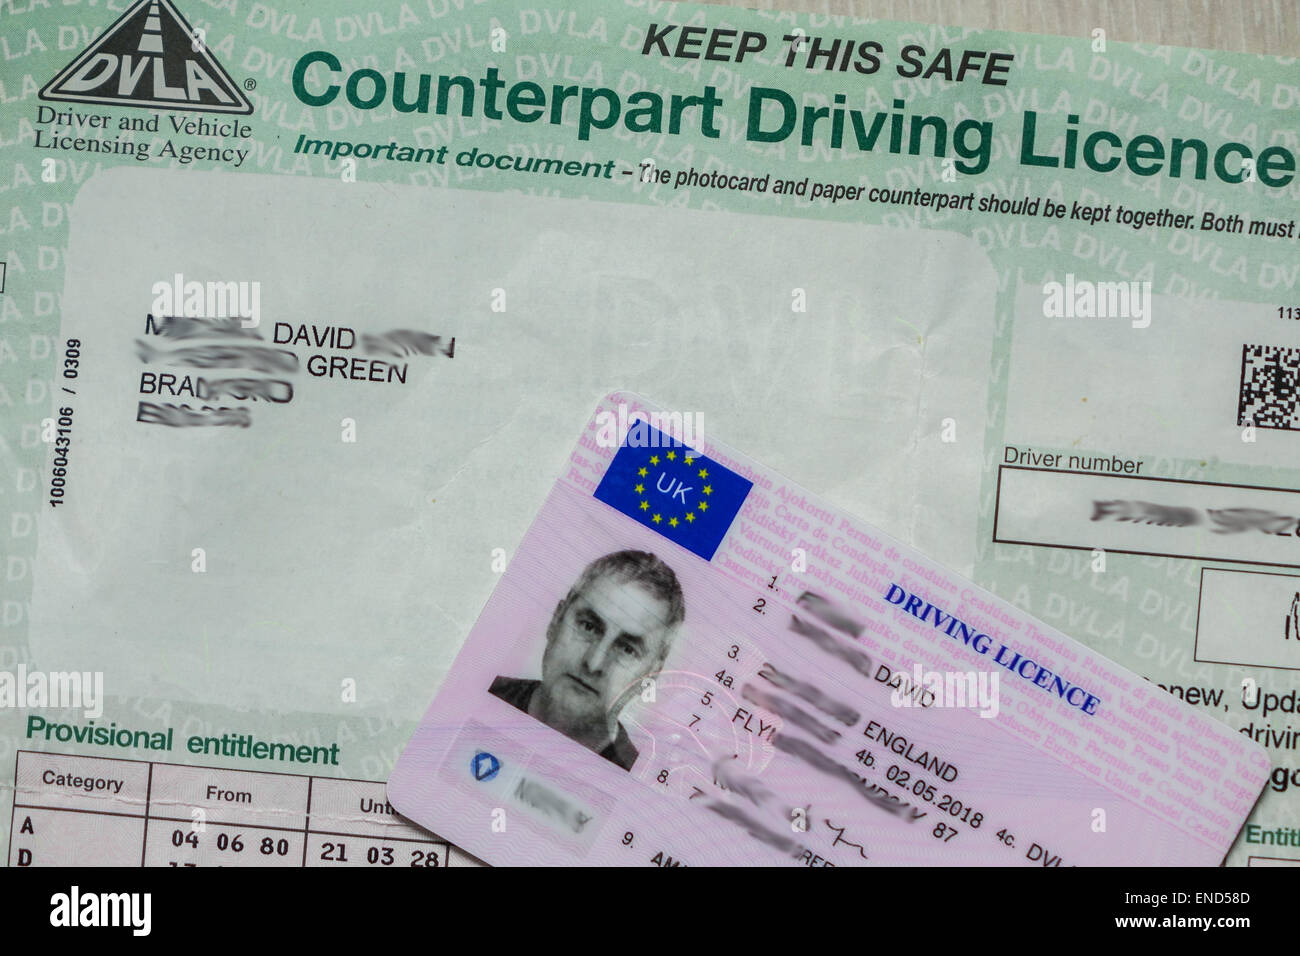 Permis de conduire au Royaume-Uni en papier sera supprimée juin 2015. Les détails des condamnations seront conservés sur la base de données de la DVLA Banque D'Images